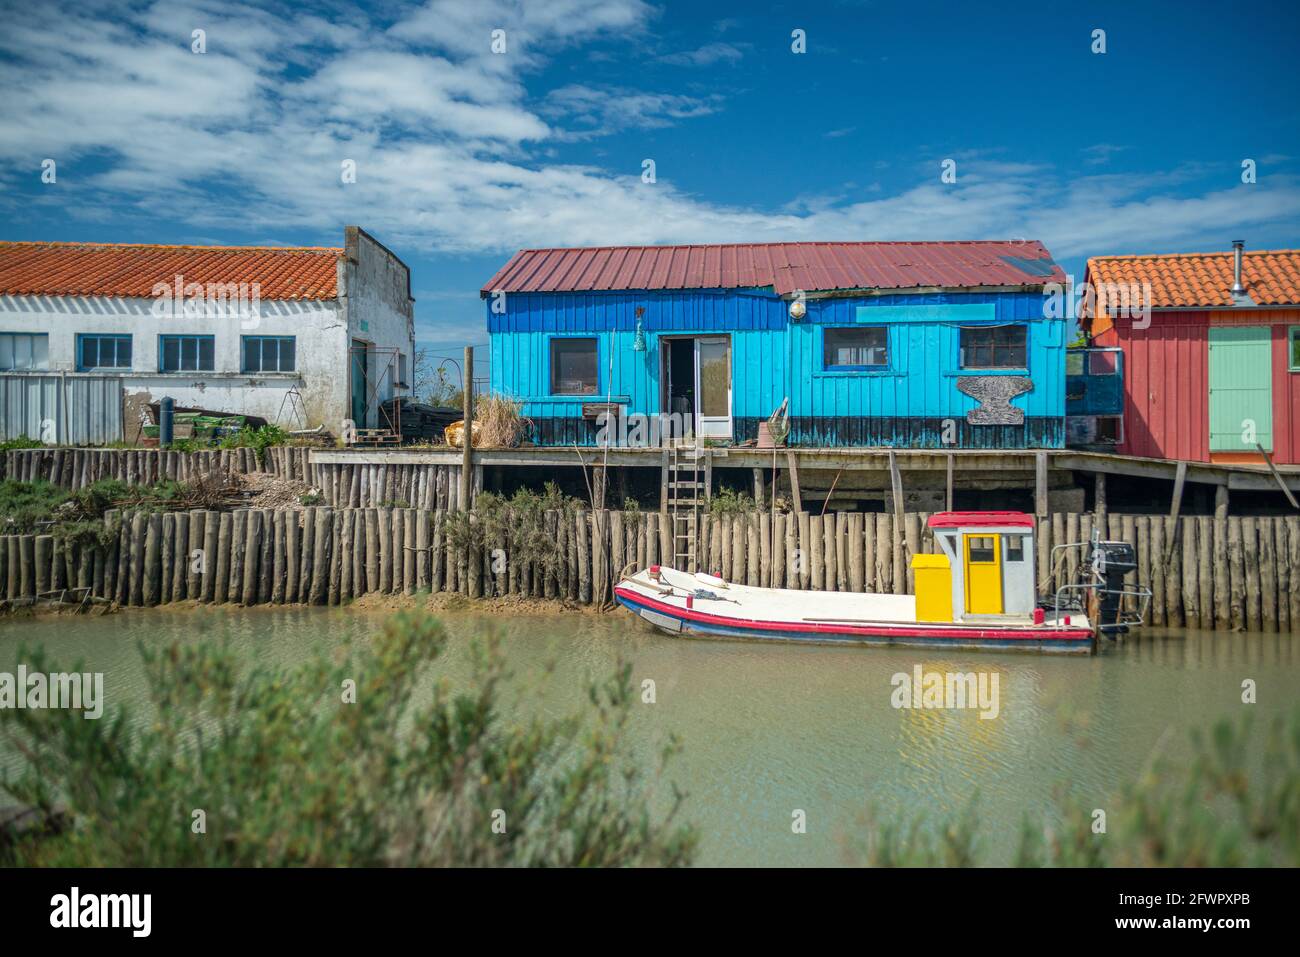 Farbenfrohe Austernhütten und Austernboot im Hafen, Oleron Island, Charente Maritime, Frankreich an der Westatlantikküste Stockfoto